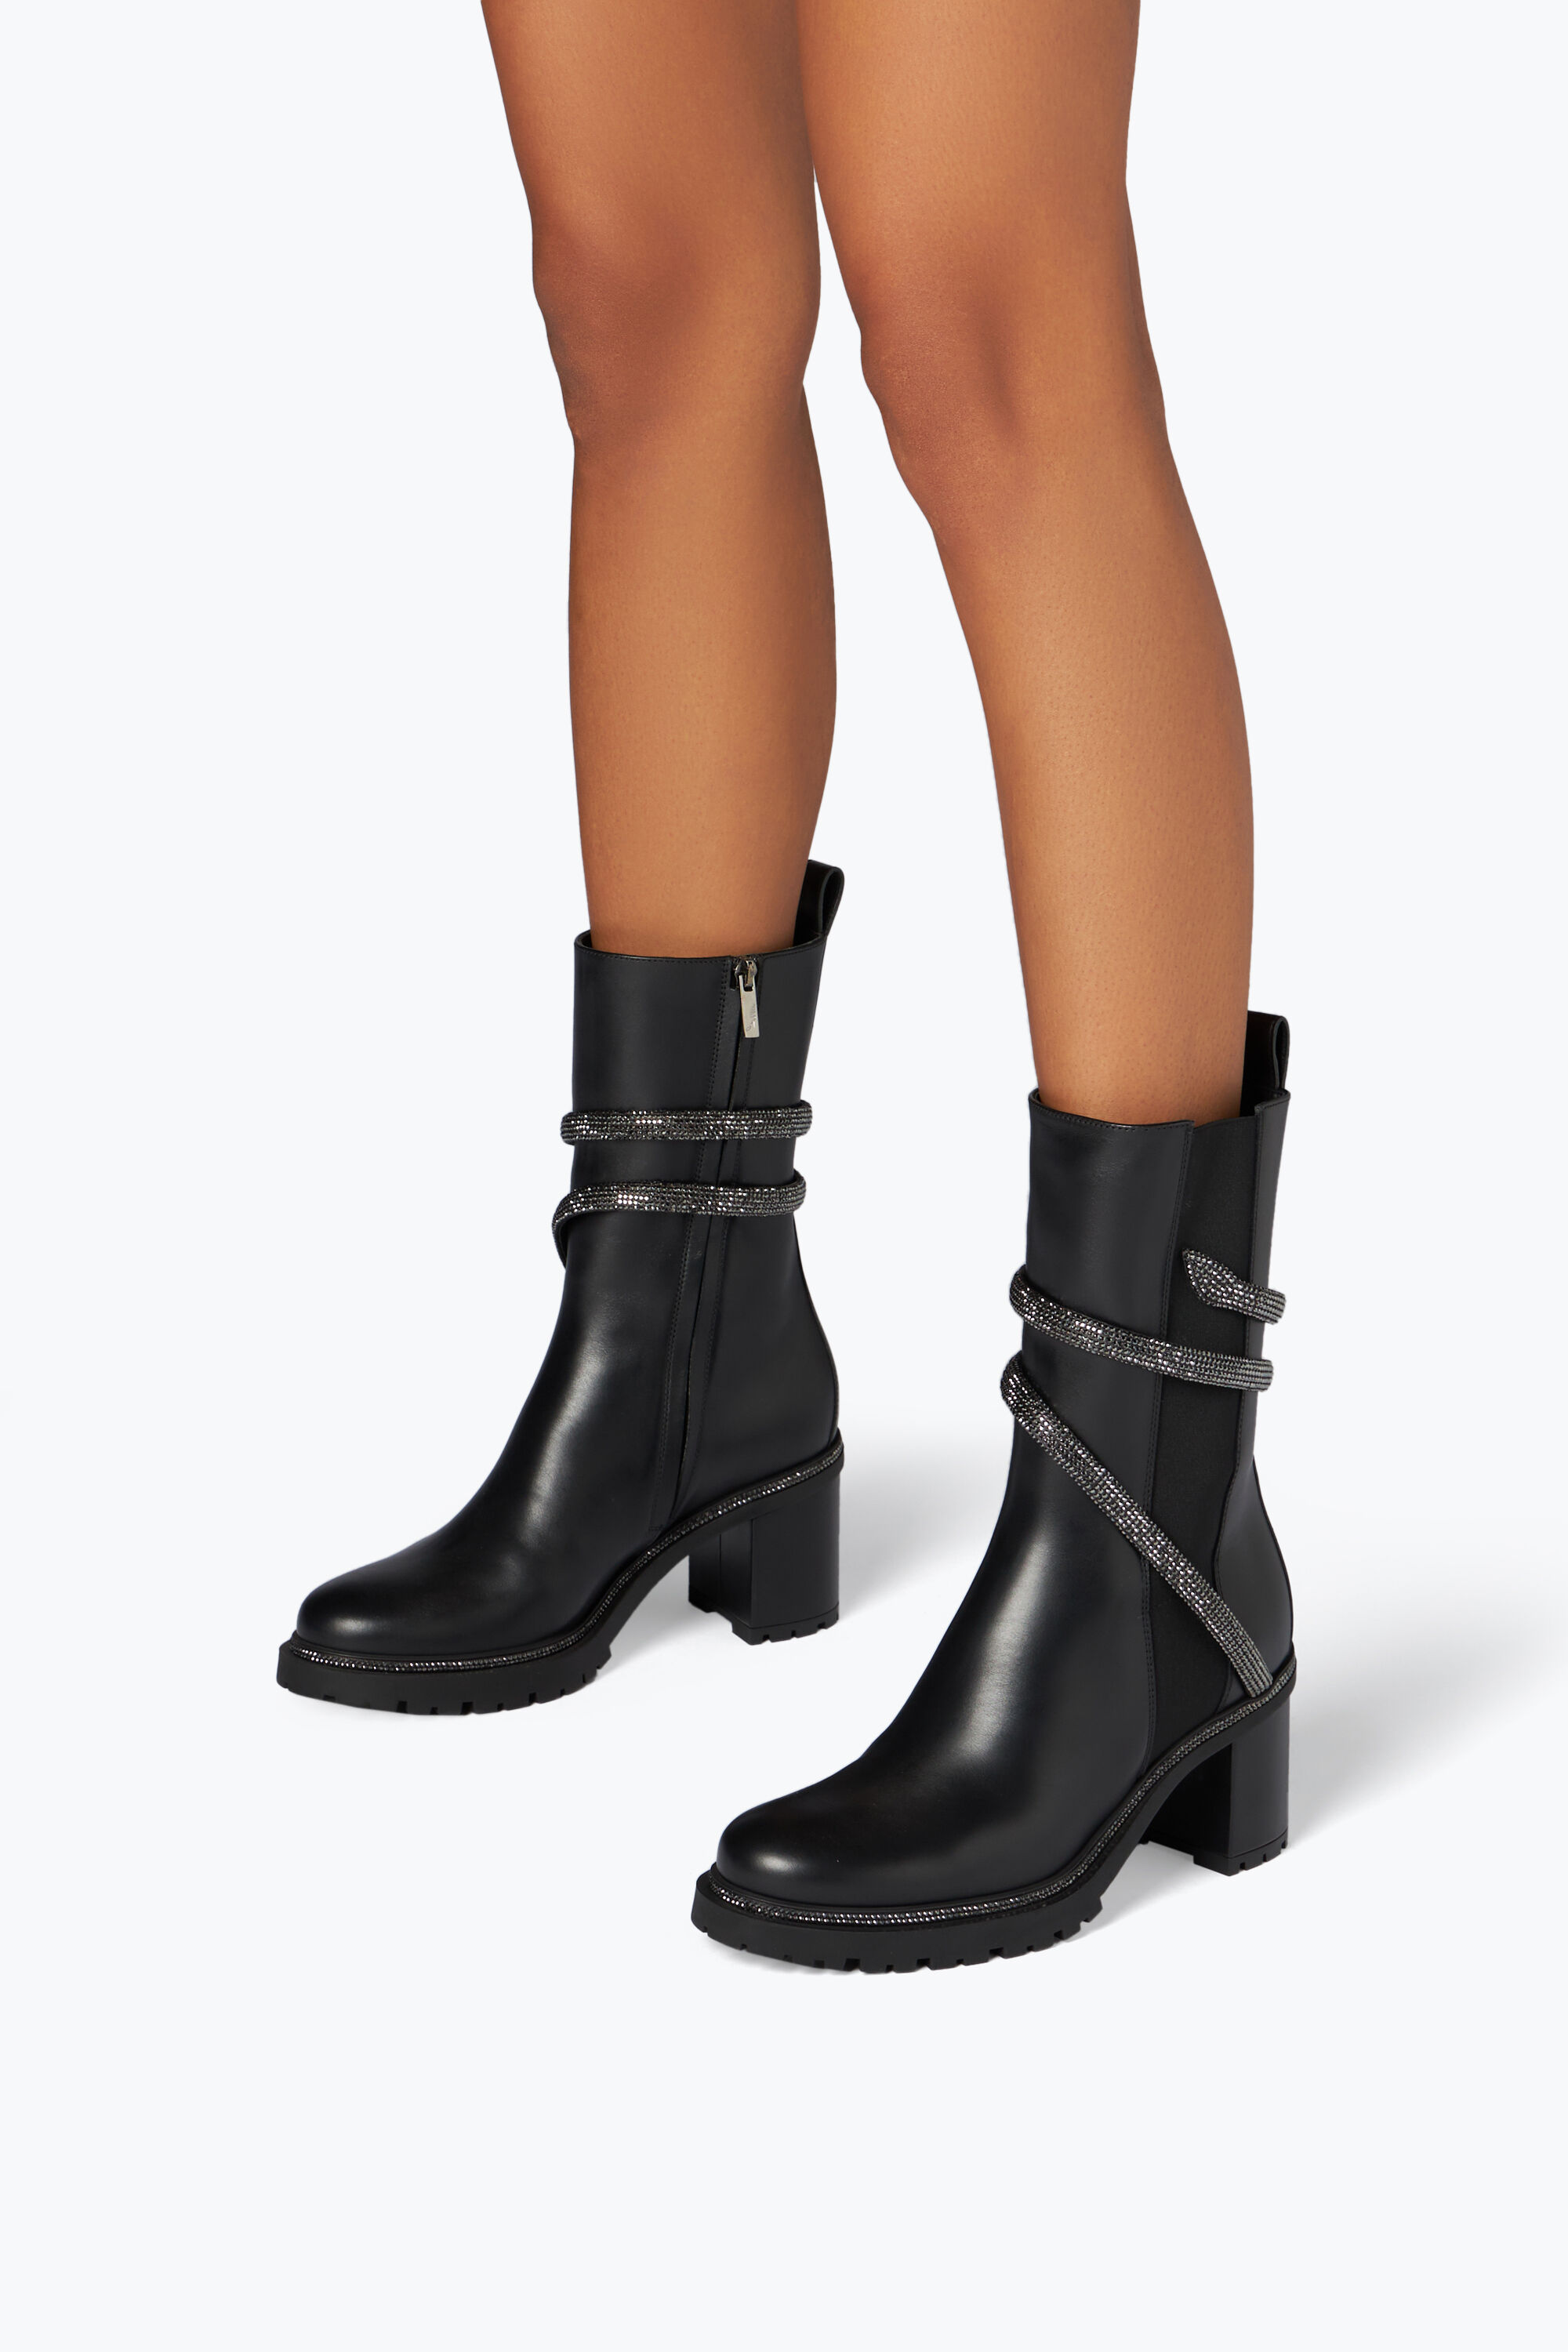 Women's Boots | Rene Caovilla®